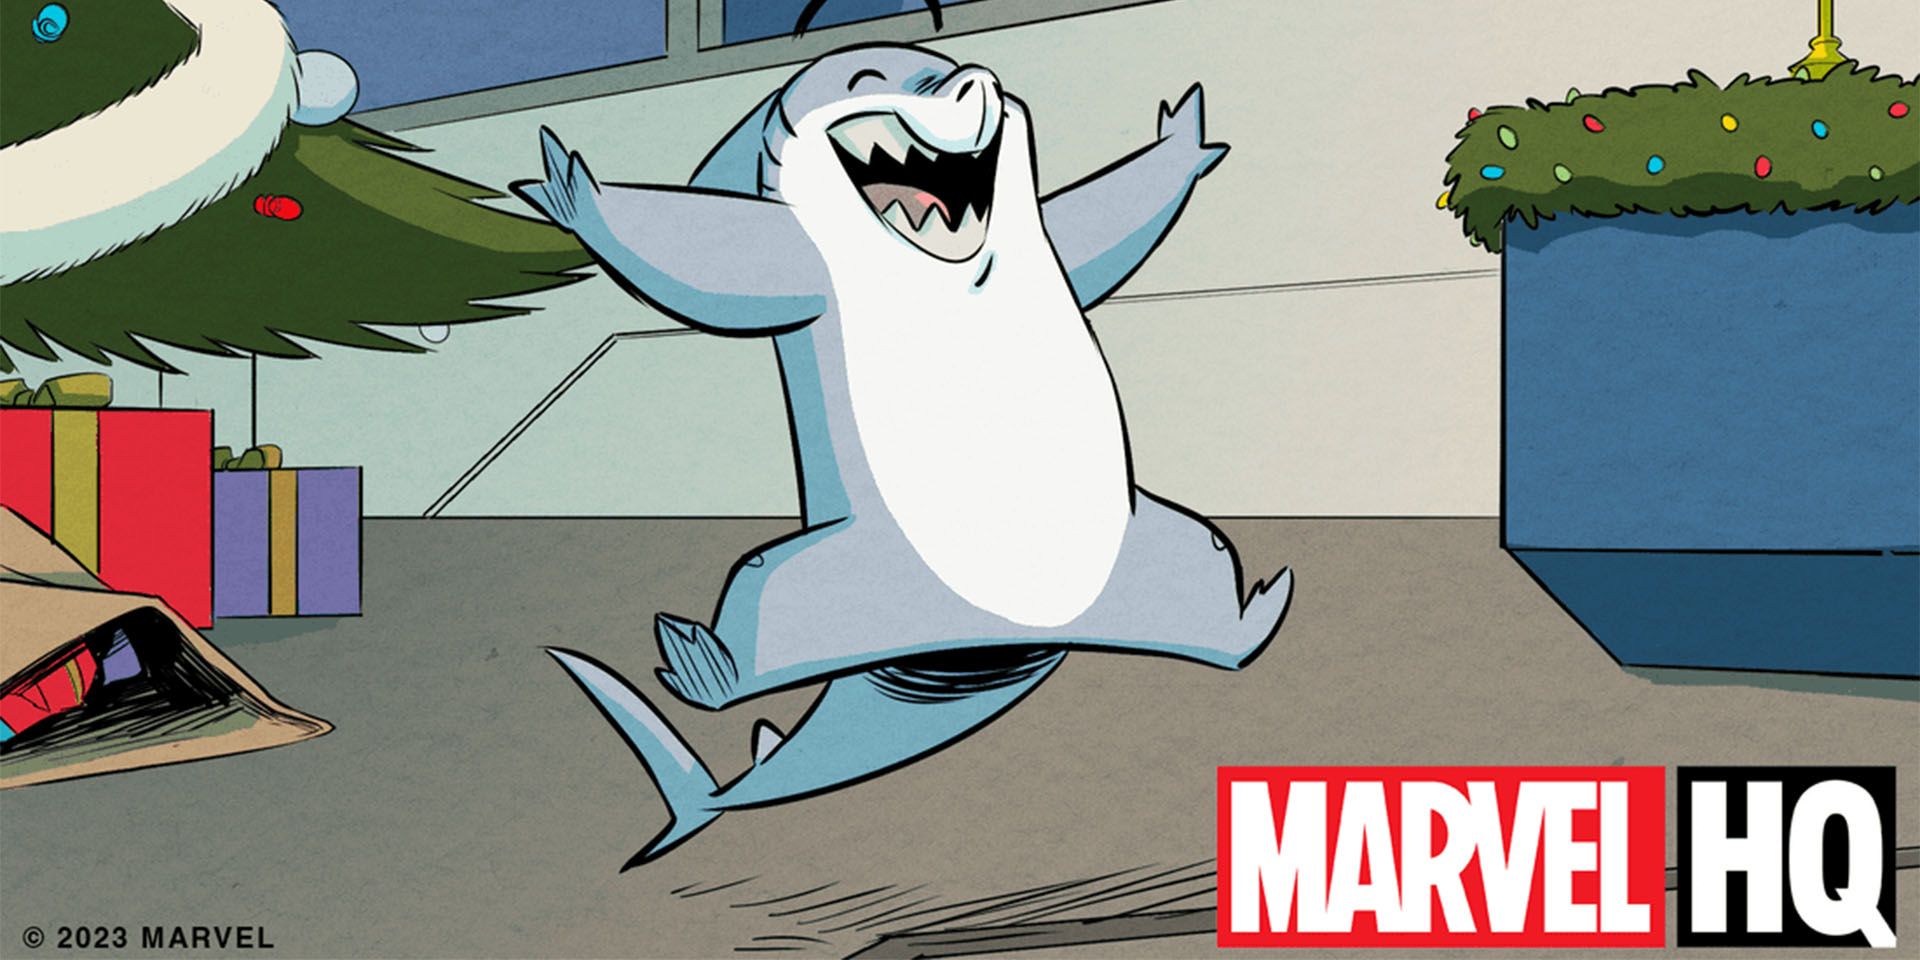 Jeff the Land Shark aparece em um still da nova série Marvel Motion Comic.